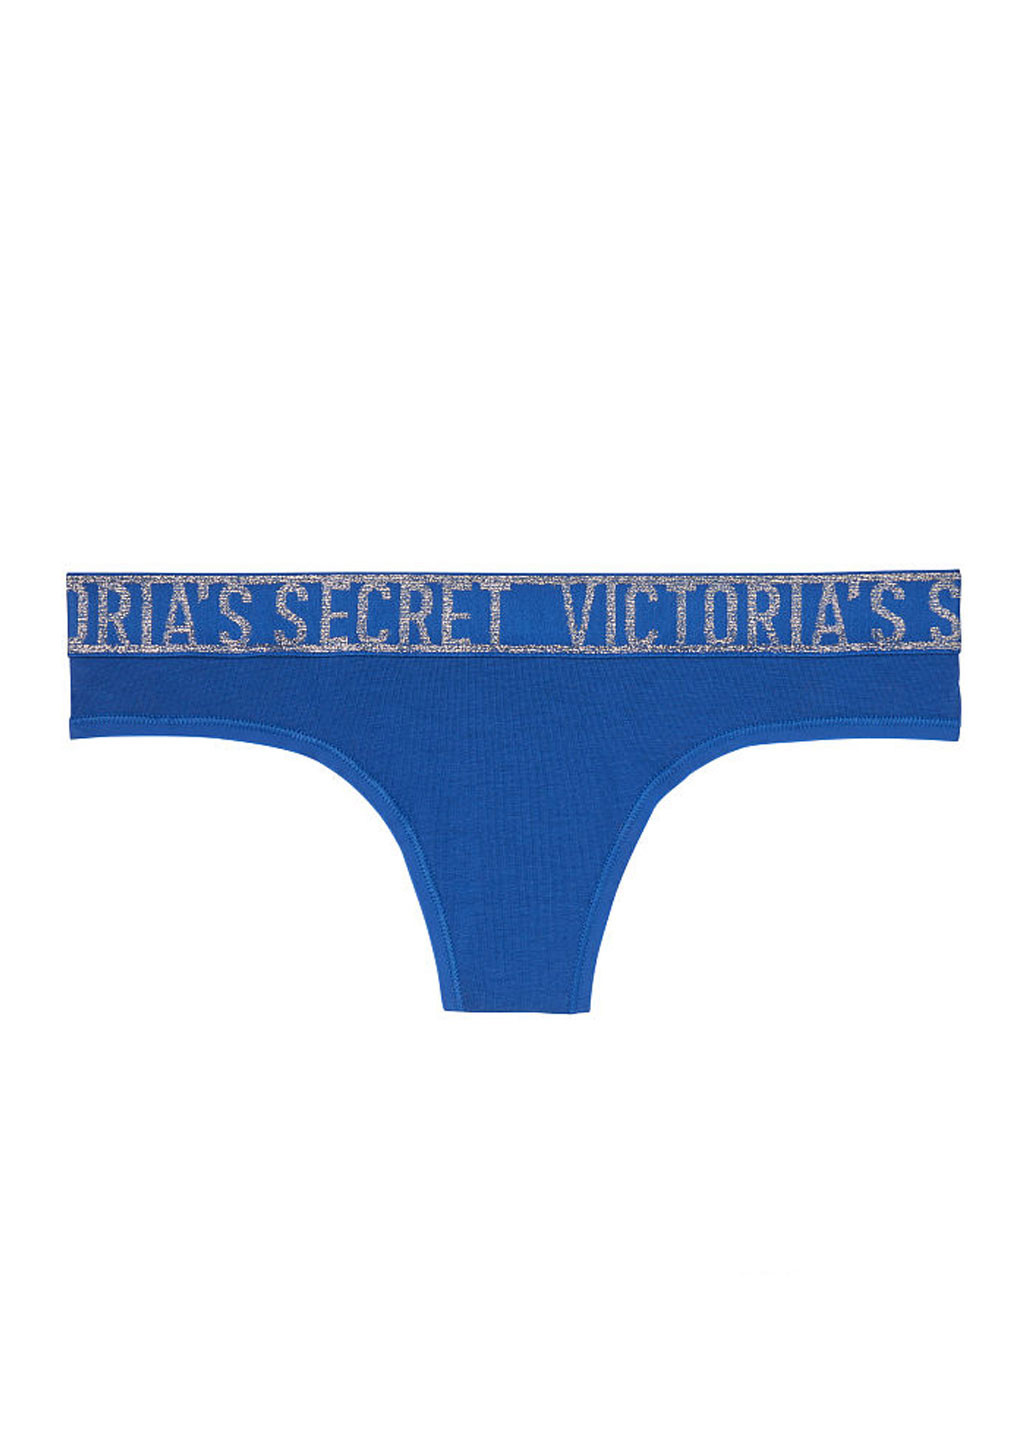 Трусы Victoria's Secret стринги логотипы тёмно-голубые повседневные трикотаж